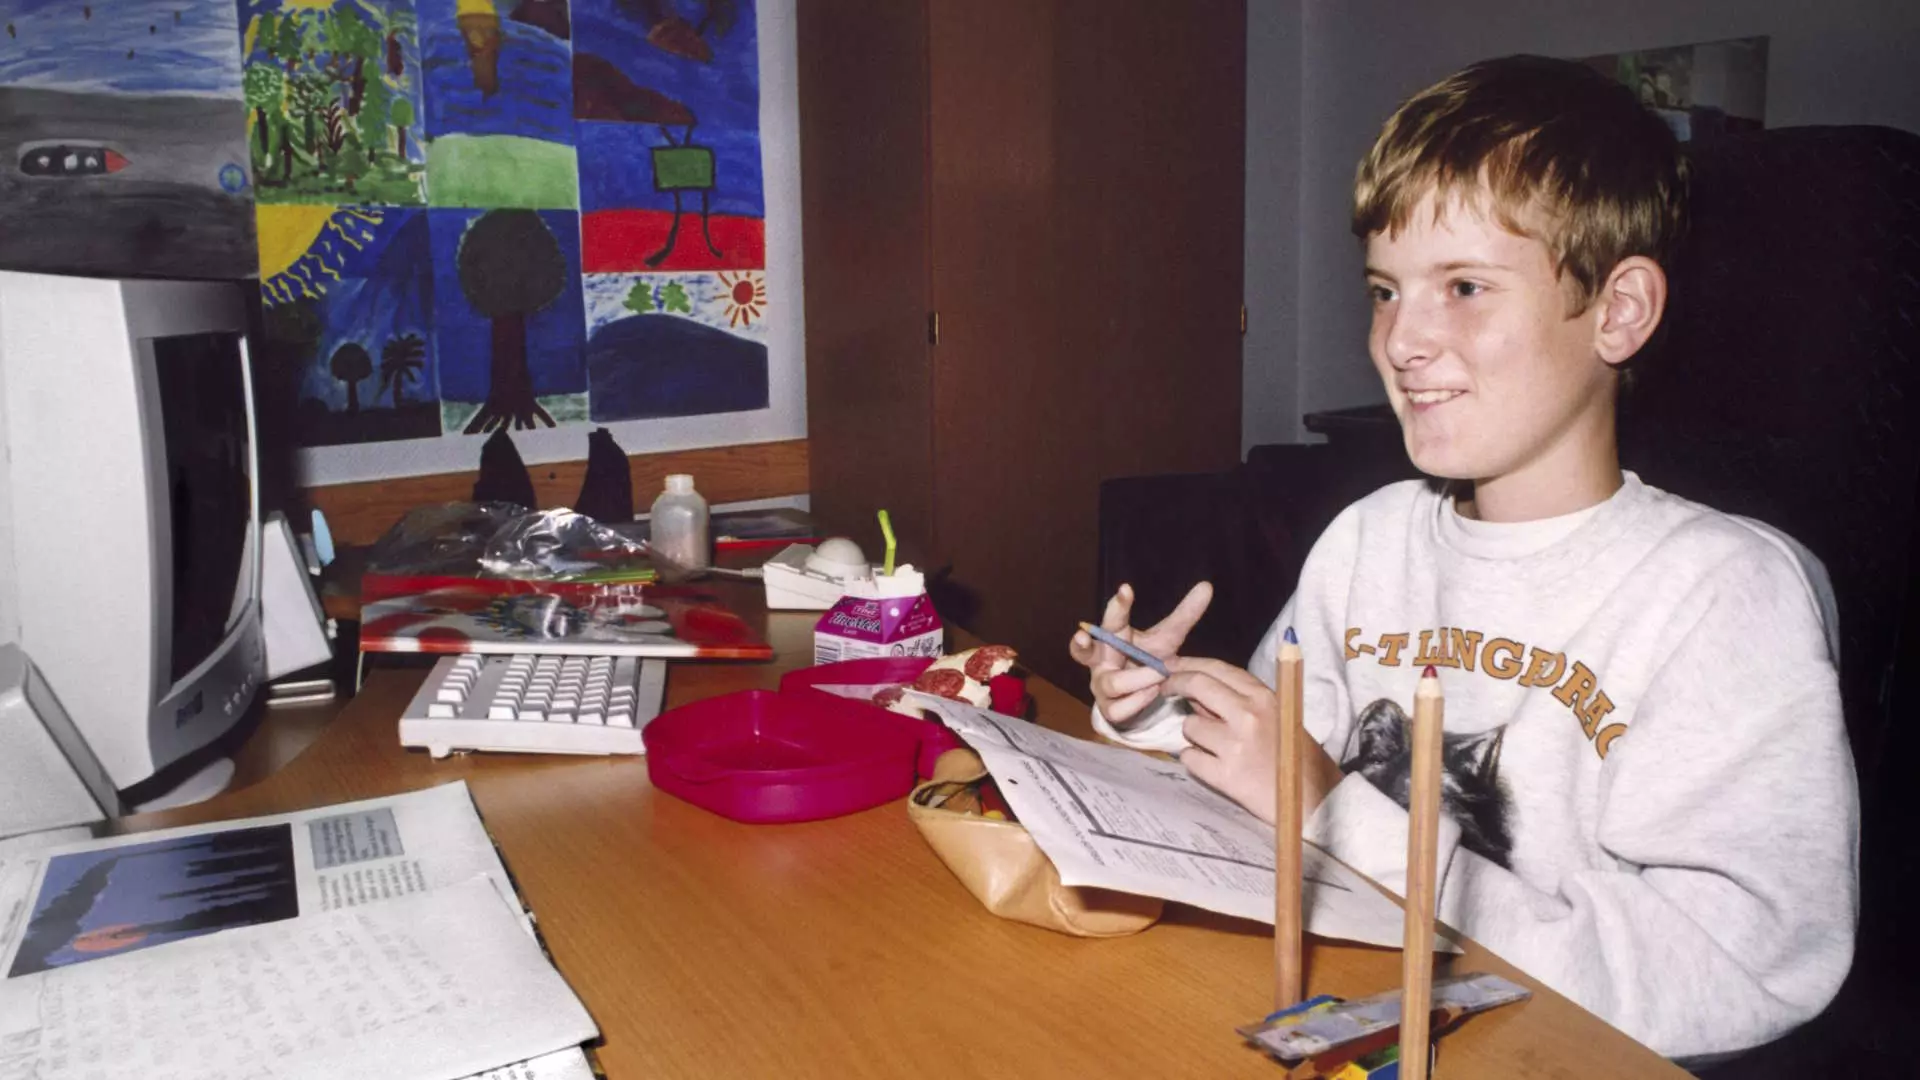 En ung gutt sitter ved et skrivebord. Det ser ut som at han muligens gjør lekser. Bildet bærer preg av at det ble tatt på tidlig 2000-tallet når det kommer til klær og interiør. Gutten smiler og har på seg en hvit genser. Vi skimter utdatert datautstyr.